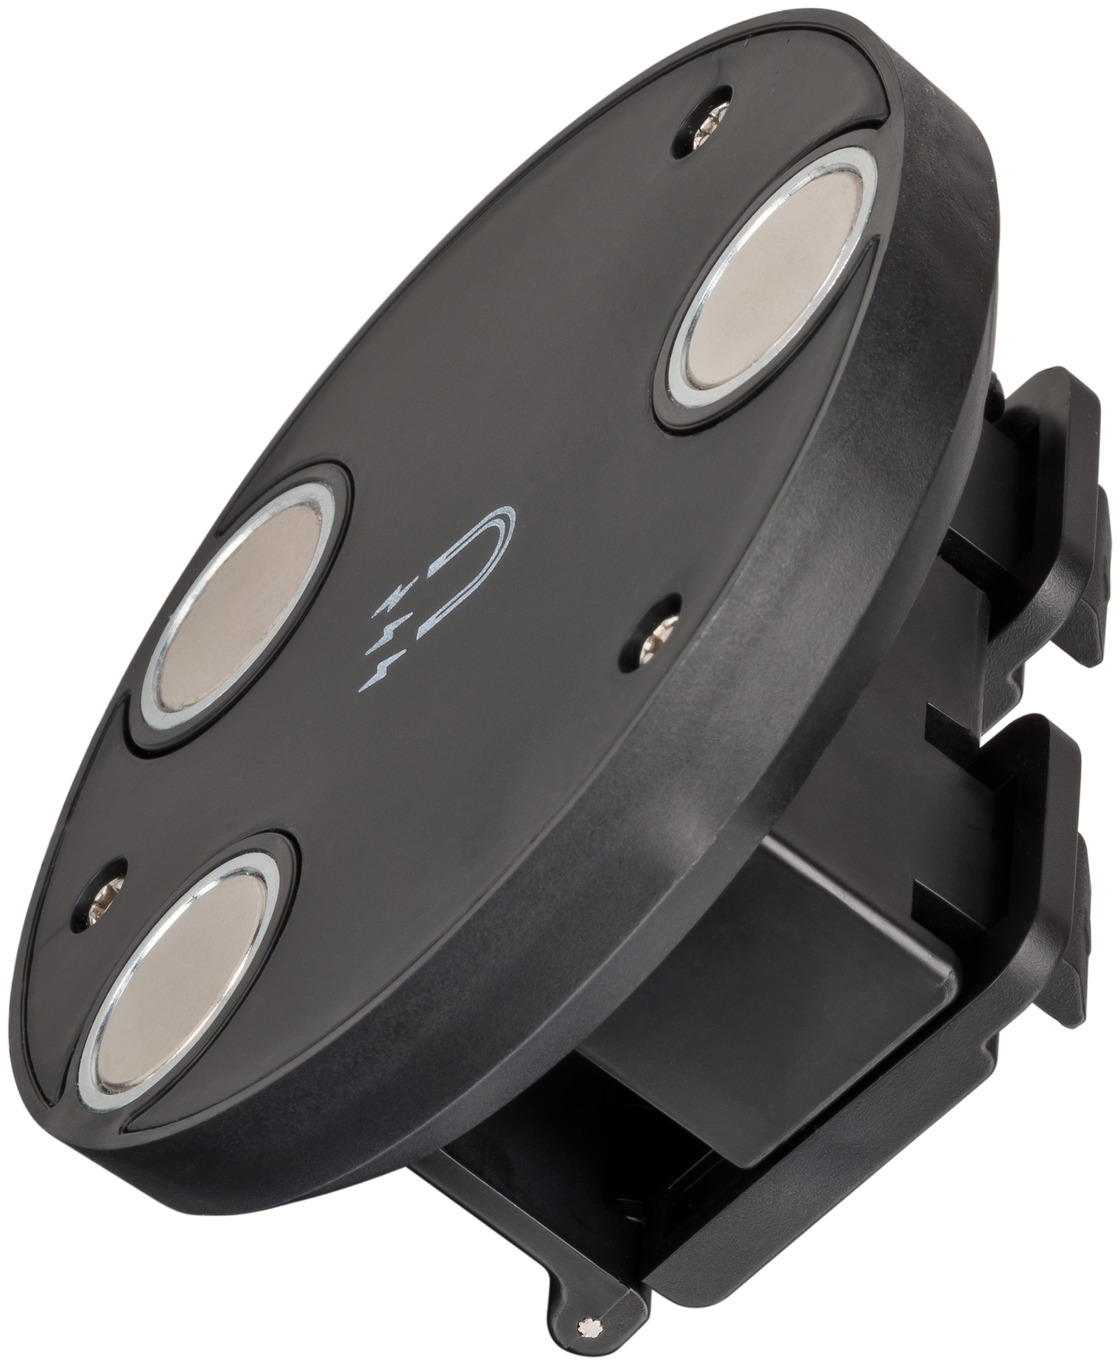 Support magnétique pour les projecteurs LED rechargeables de la gamme RUFUS  / PF 1000 MA